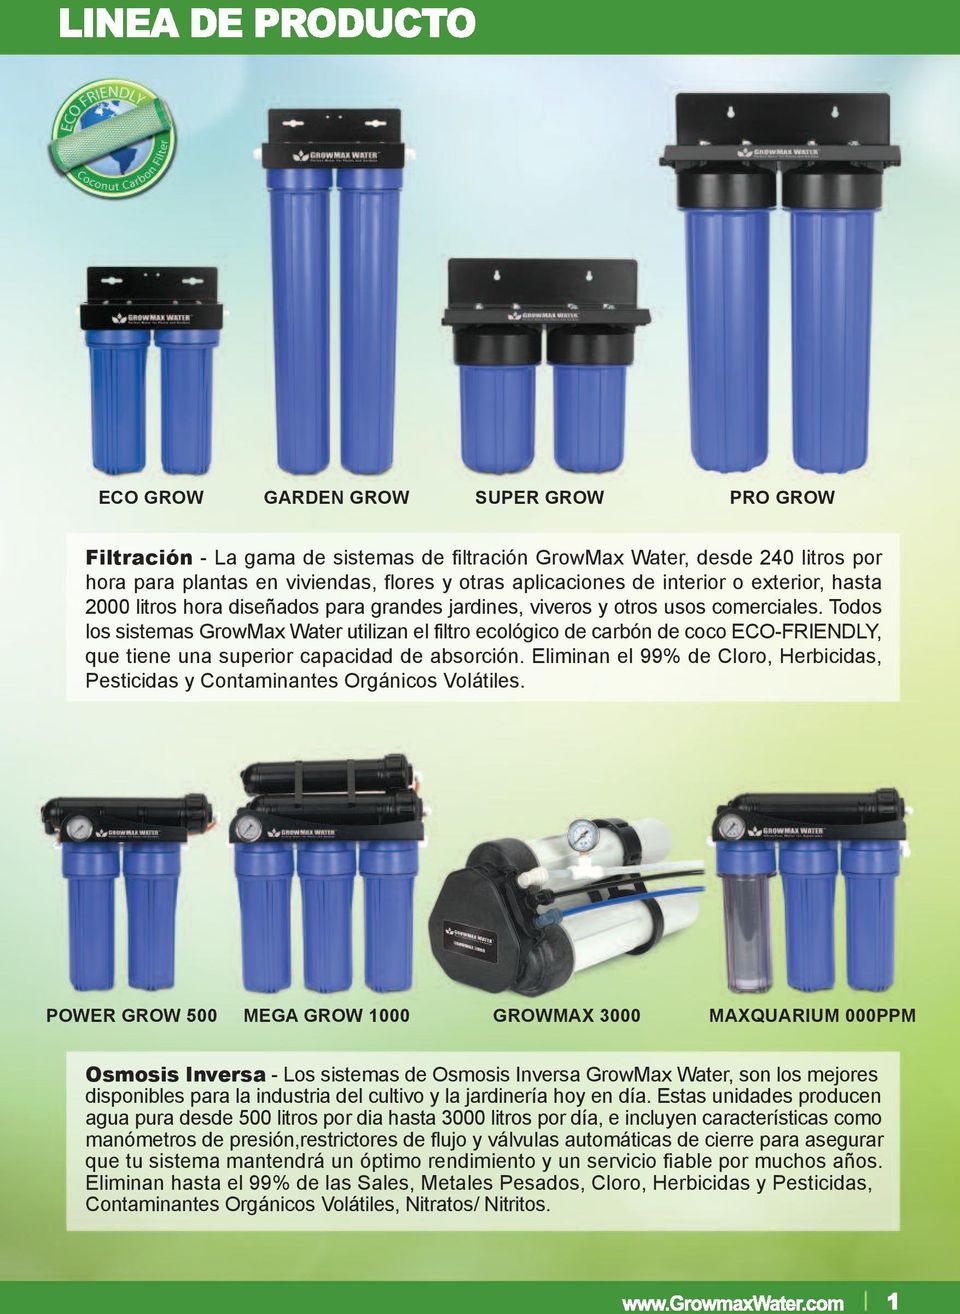 Todos los sistemas GrowMax Water utilizan el filtro ecológico de carbón de coco ECO-FRIENDLY, que tiene una superior capacidad de absorción.